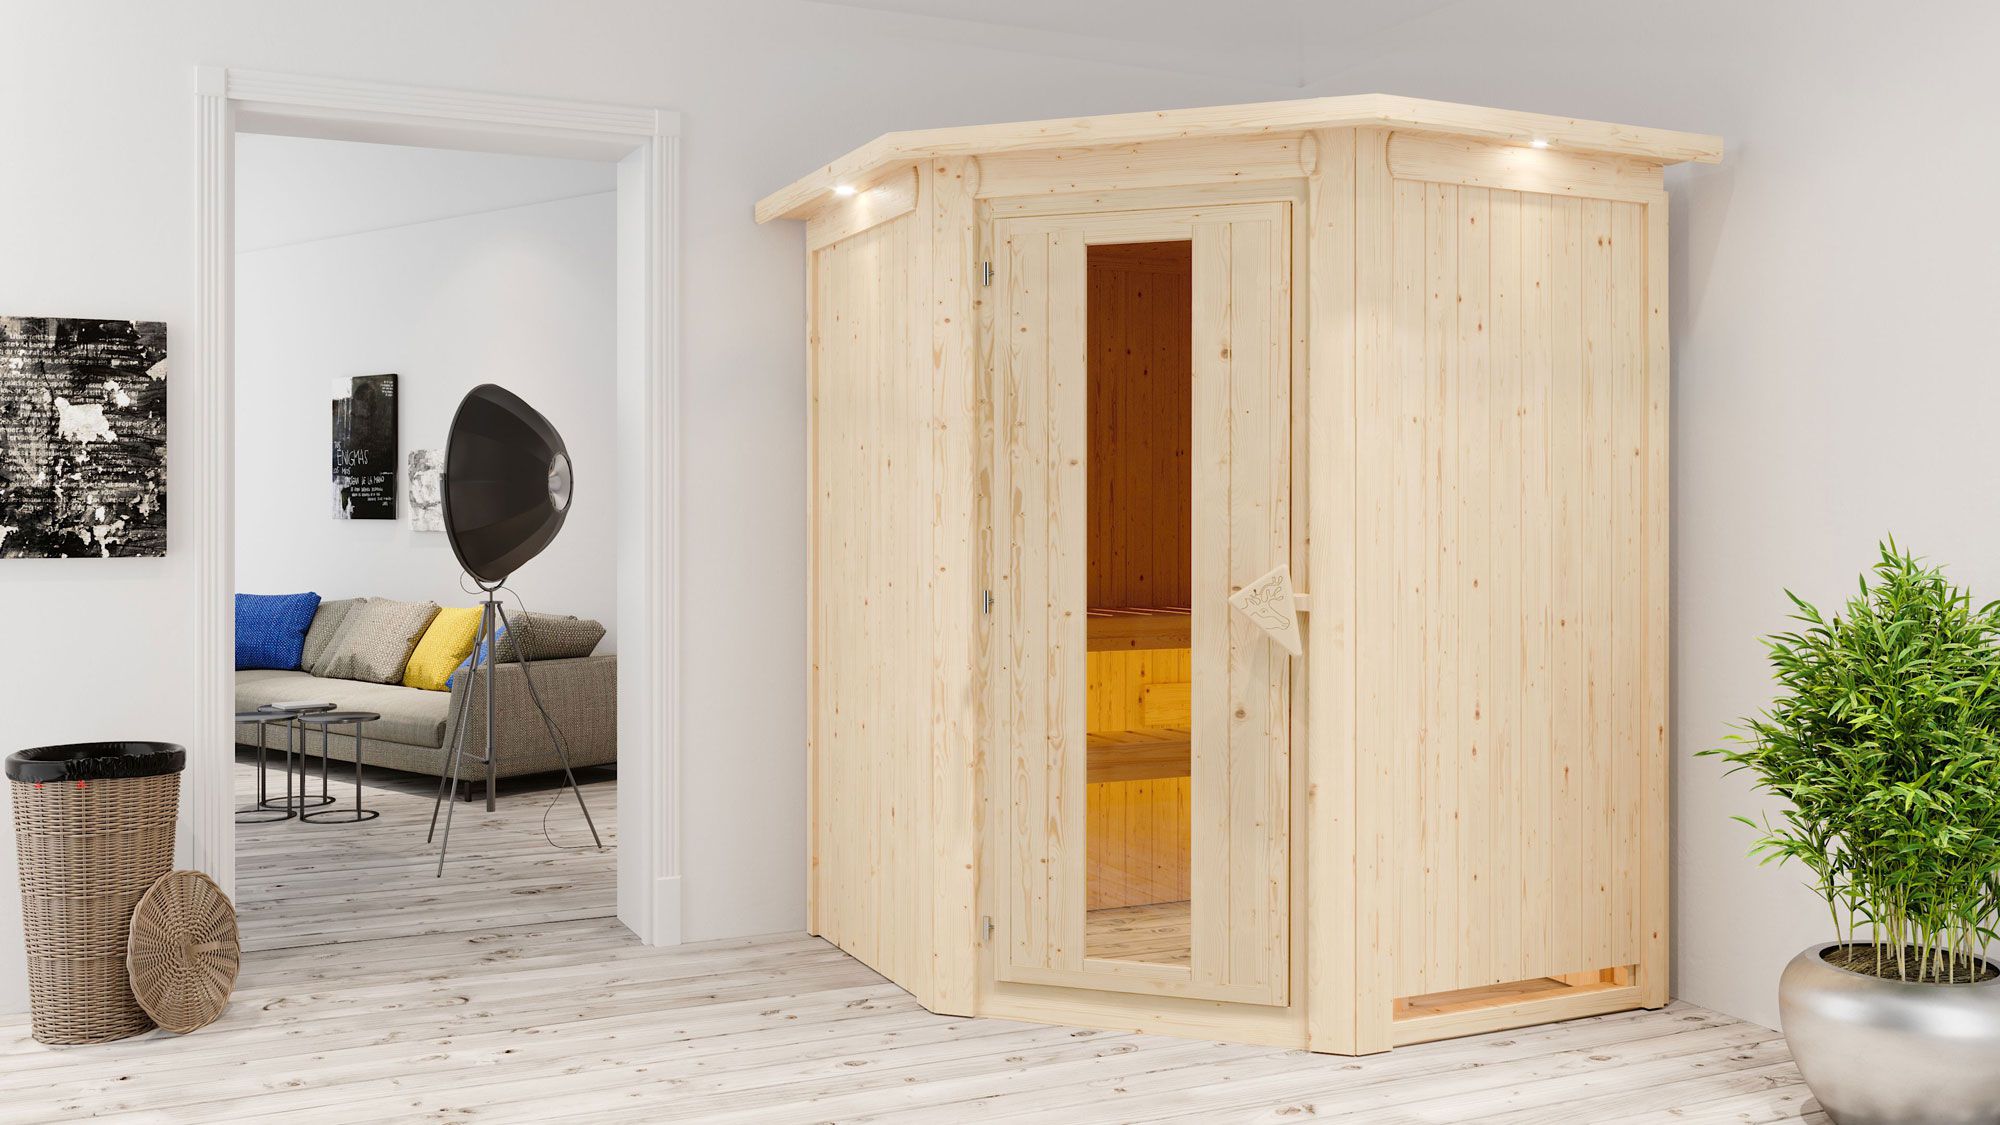 SET-sauna "Eetu" met energiebesparende deur en rand - kleur: naturel, BIO 9 kW kachel - 165 x 165 x 202 cm (B x D x H)